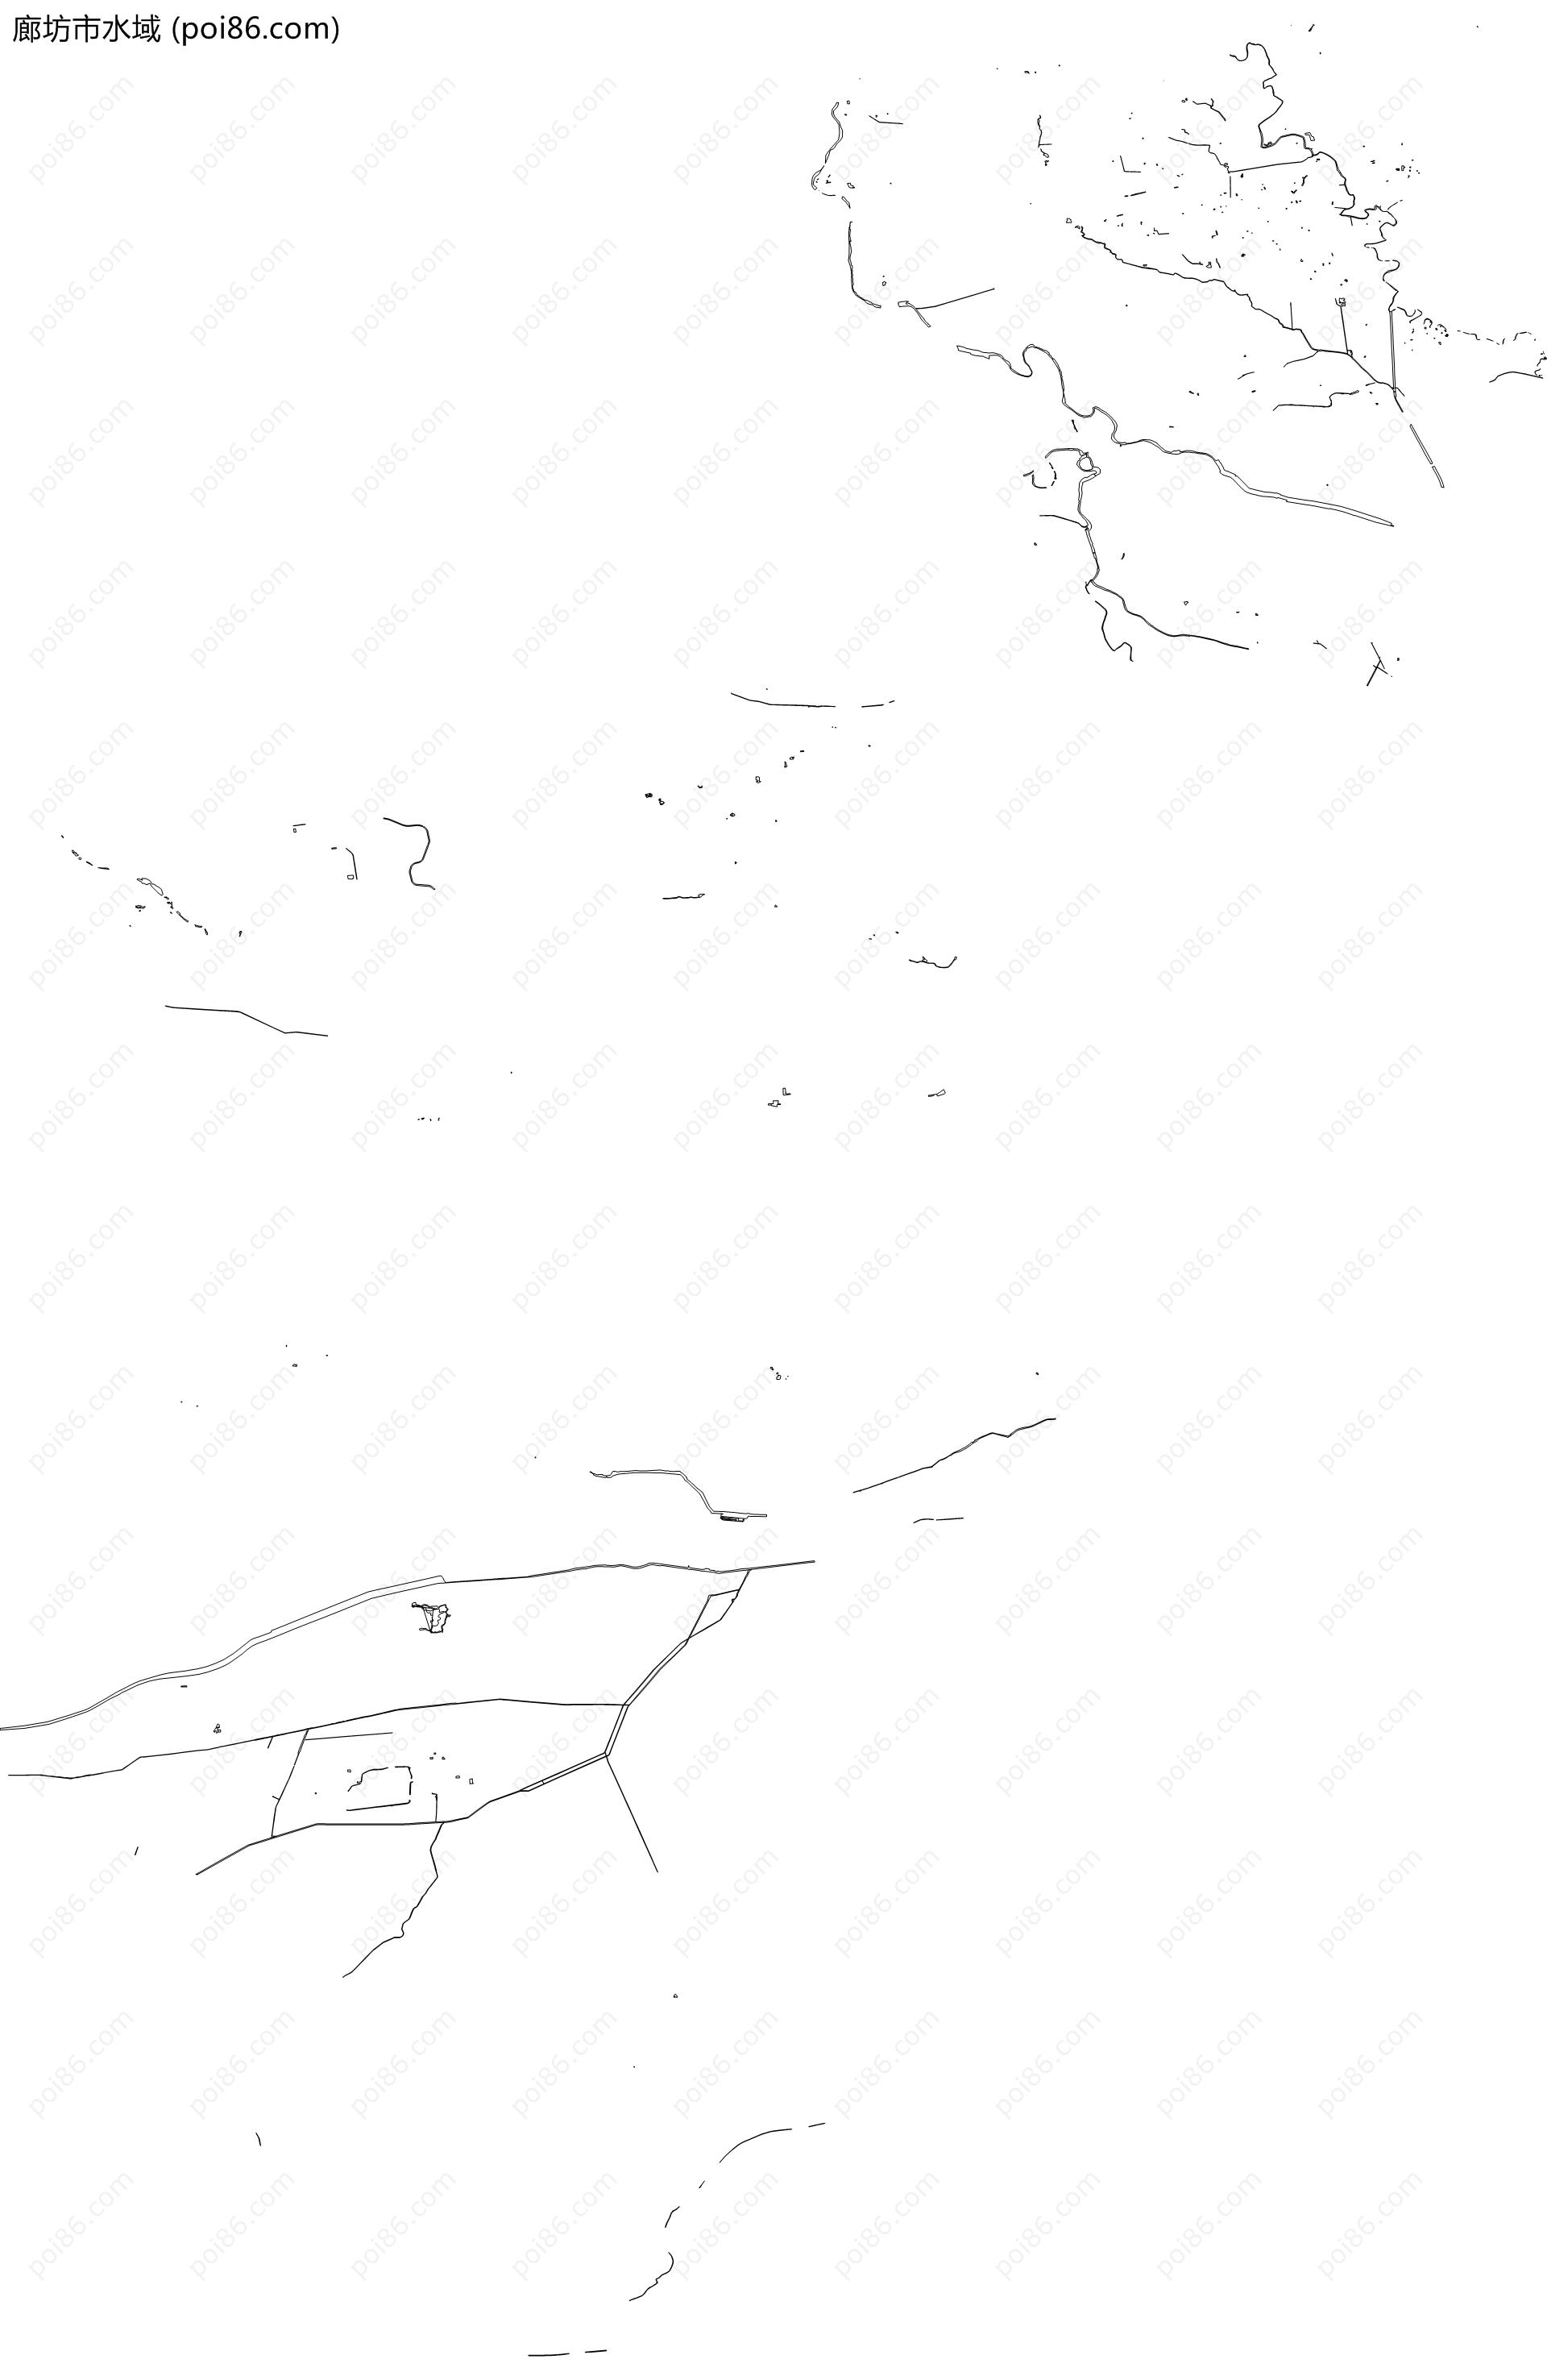 廊坊市水域地图